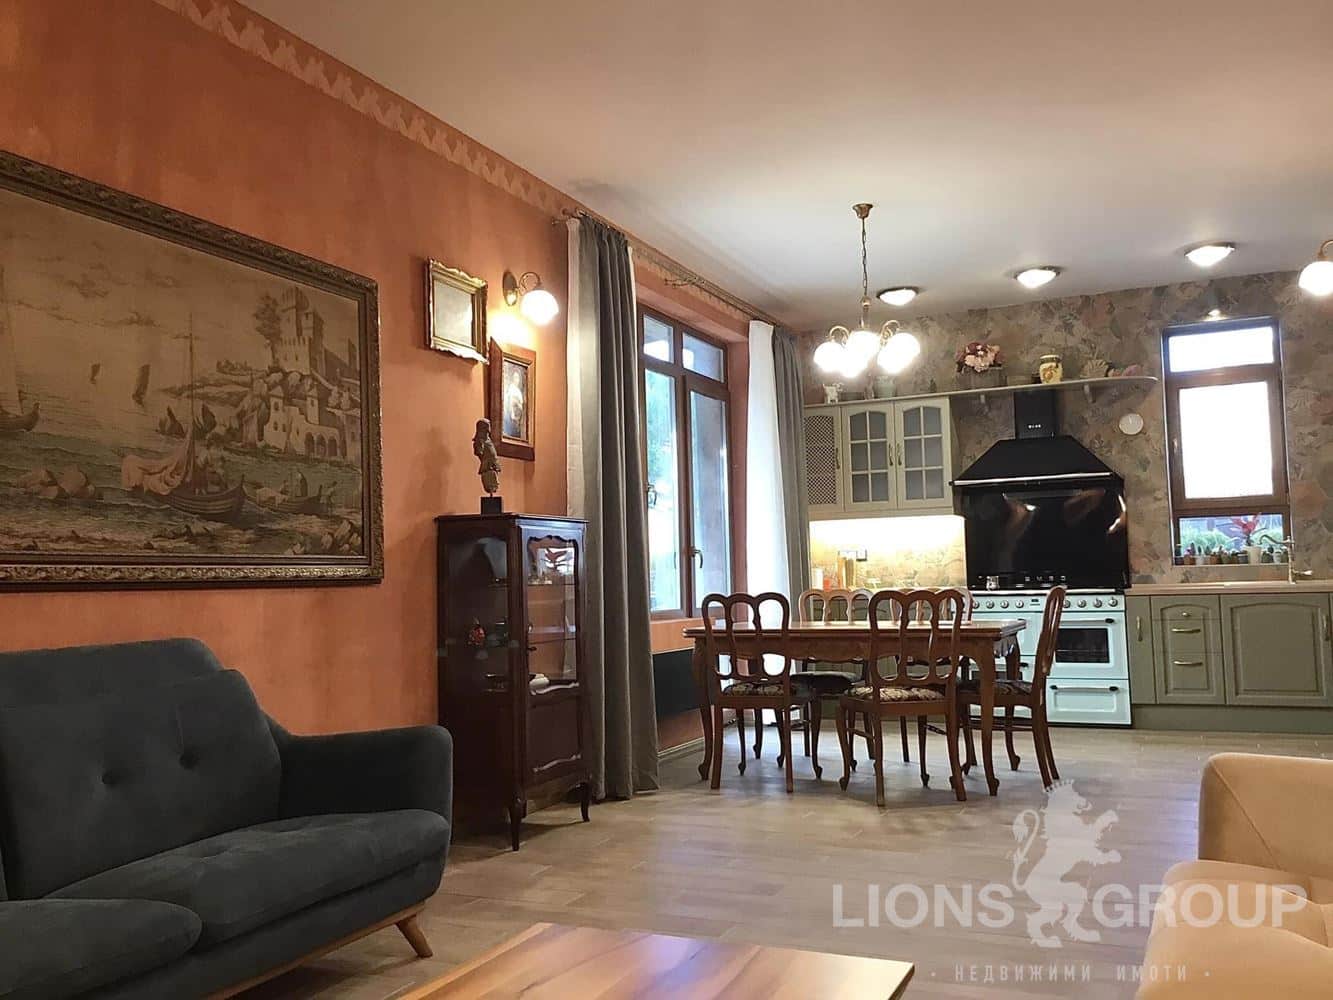 Лайънс груп недвижими имоти предлага Нова къща в Тоскански стил с просторни стаи и високи тавани РЗП 240 кв.м и двор 250 кв. - 0